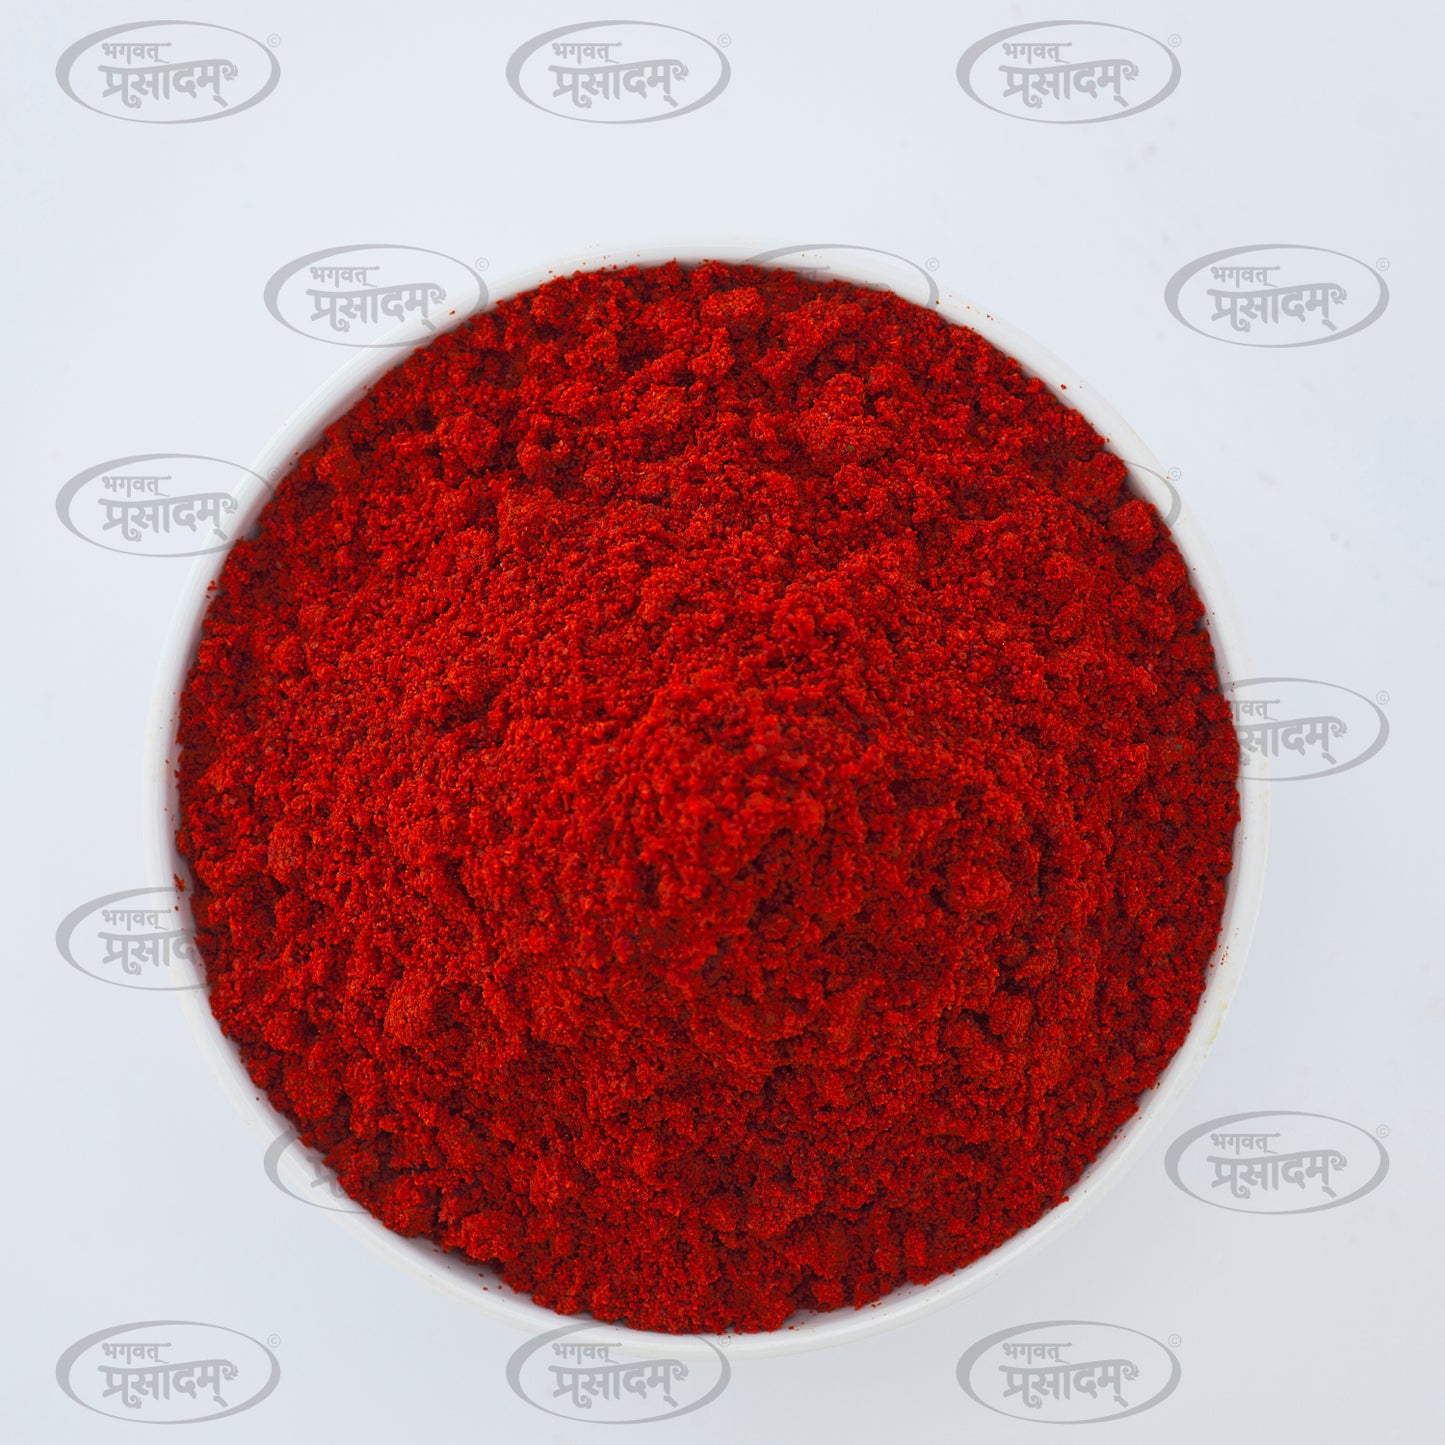 Chili Powder - Intensely Flavorful Spice by Bhagvat Prasadam